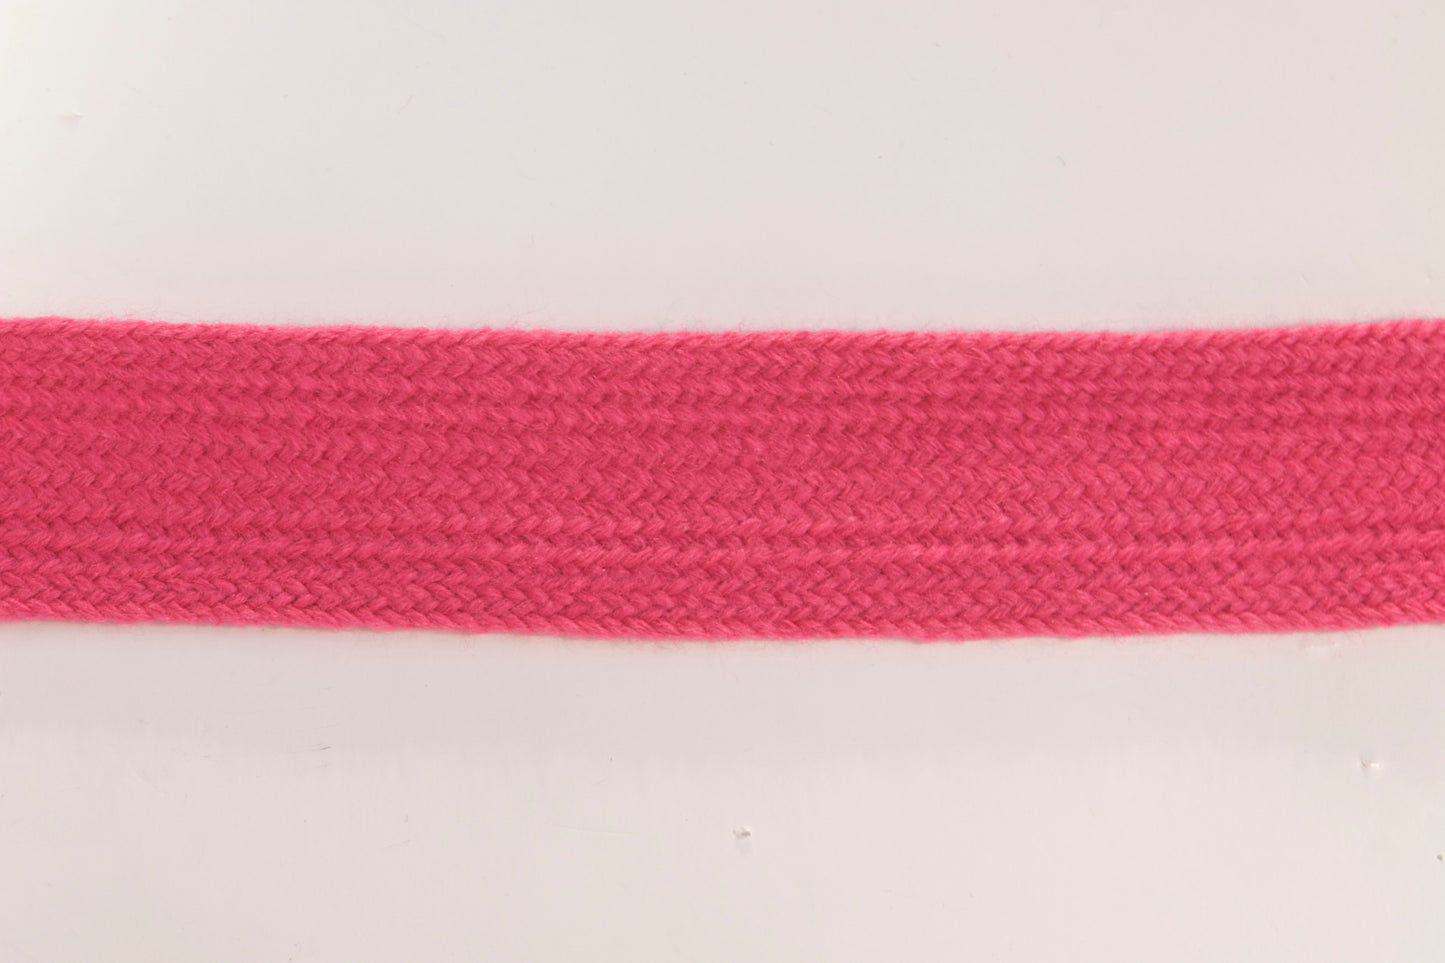 Knitting tape 28 mm